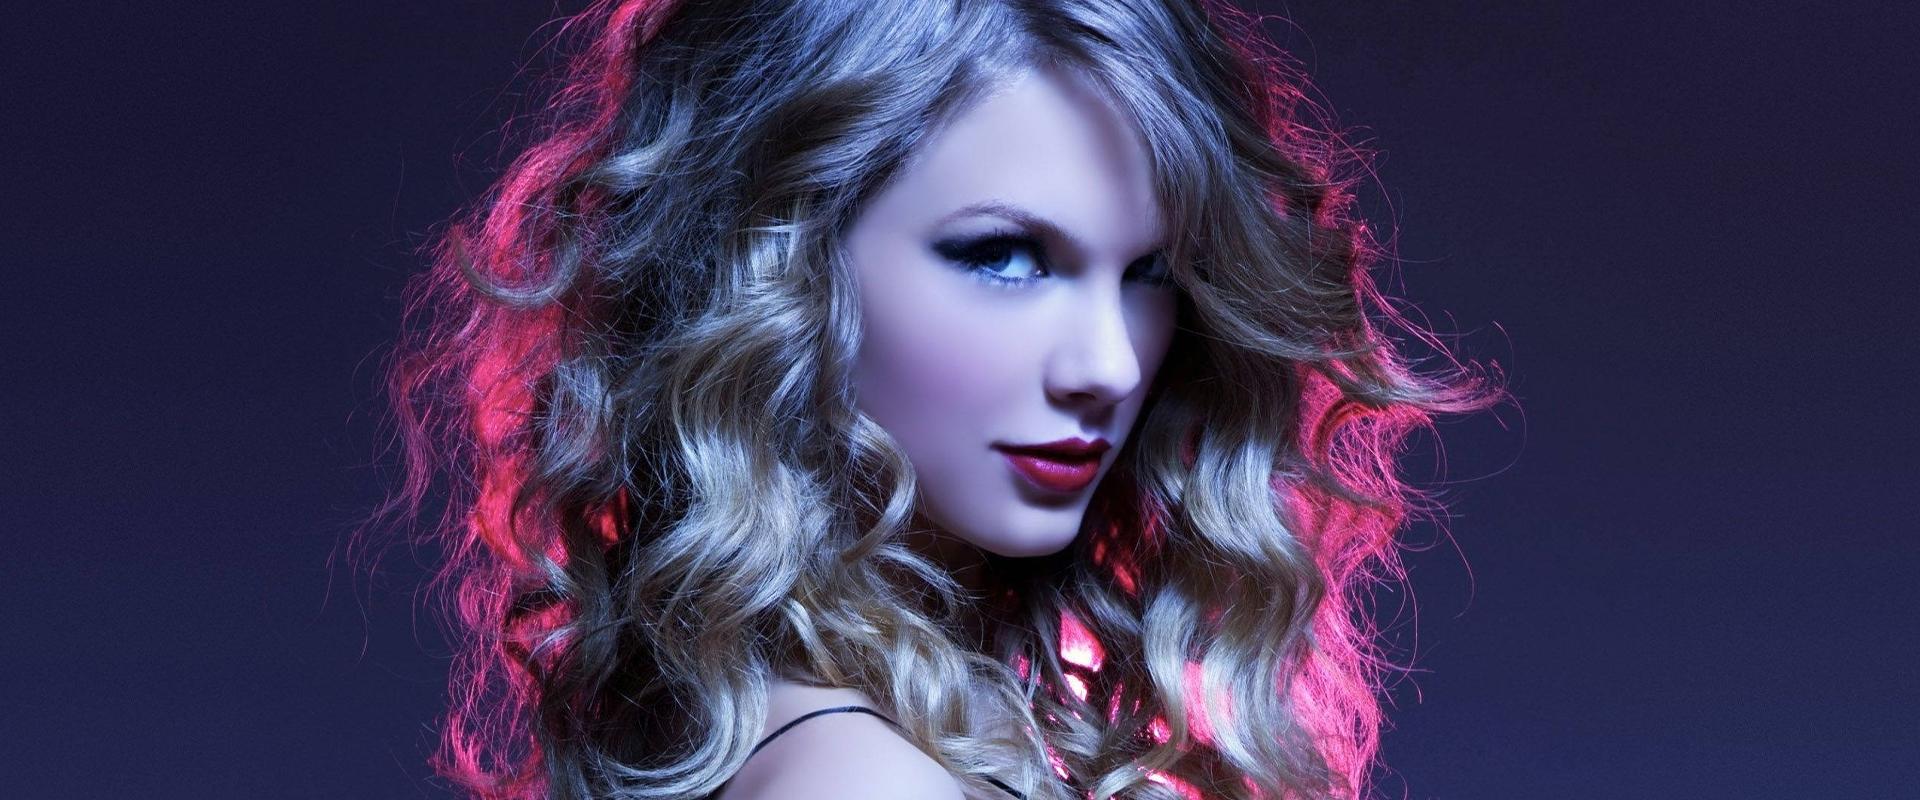 Egy új korszak hajnala: Taylor Swift, mint az AI elleni harc zászlóvivője